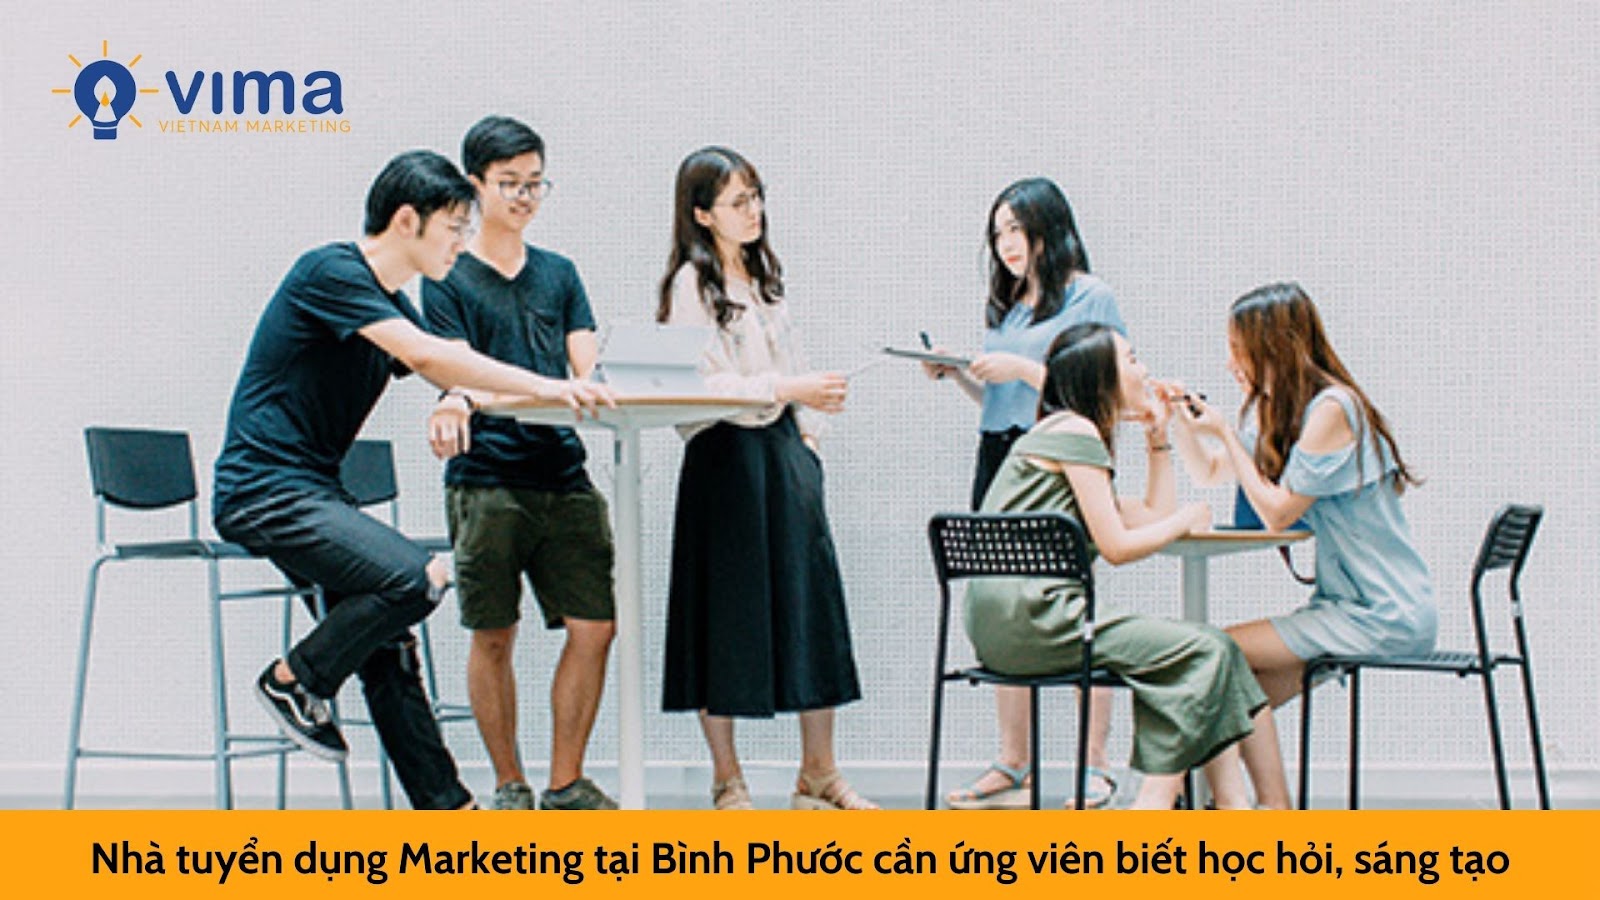 Nhà tuyển dụng Marketing tại Bình Phước cần ứng viên biết học hỏi, sáng tạo